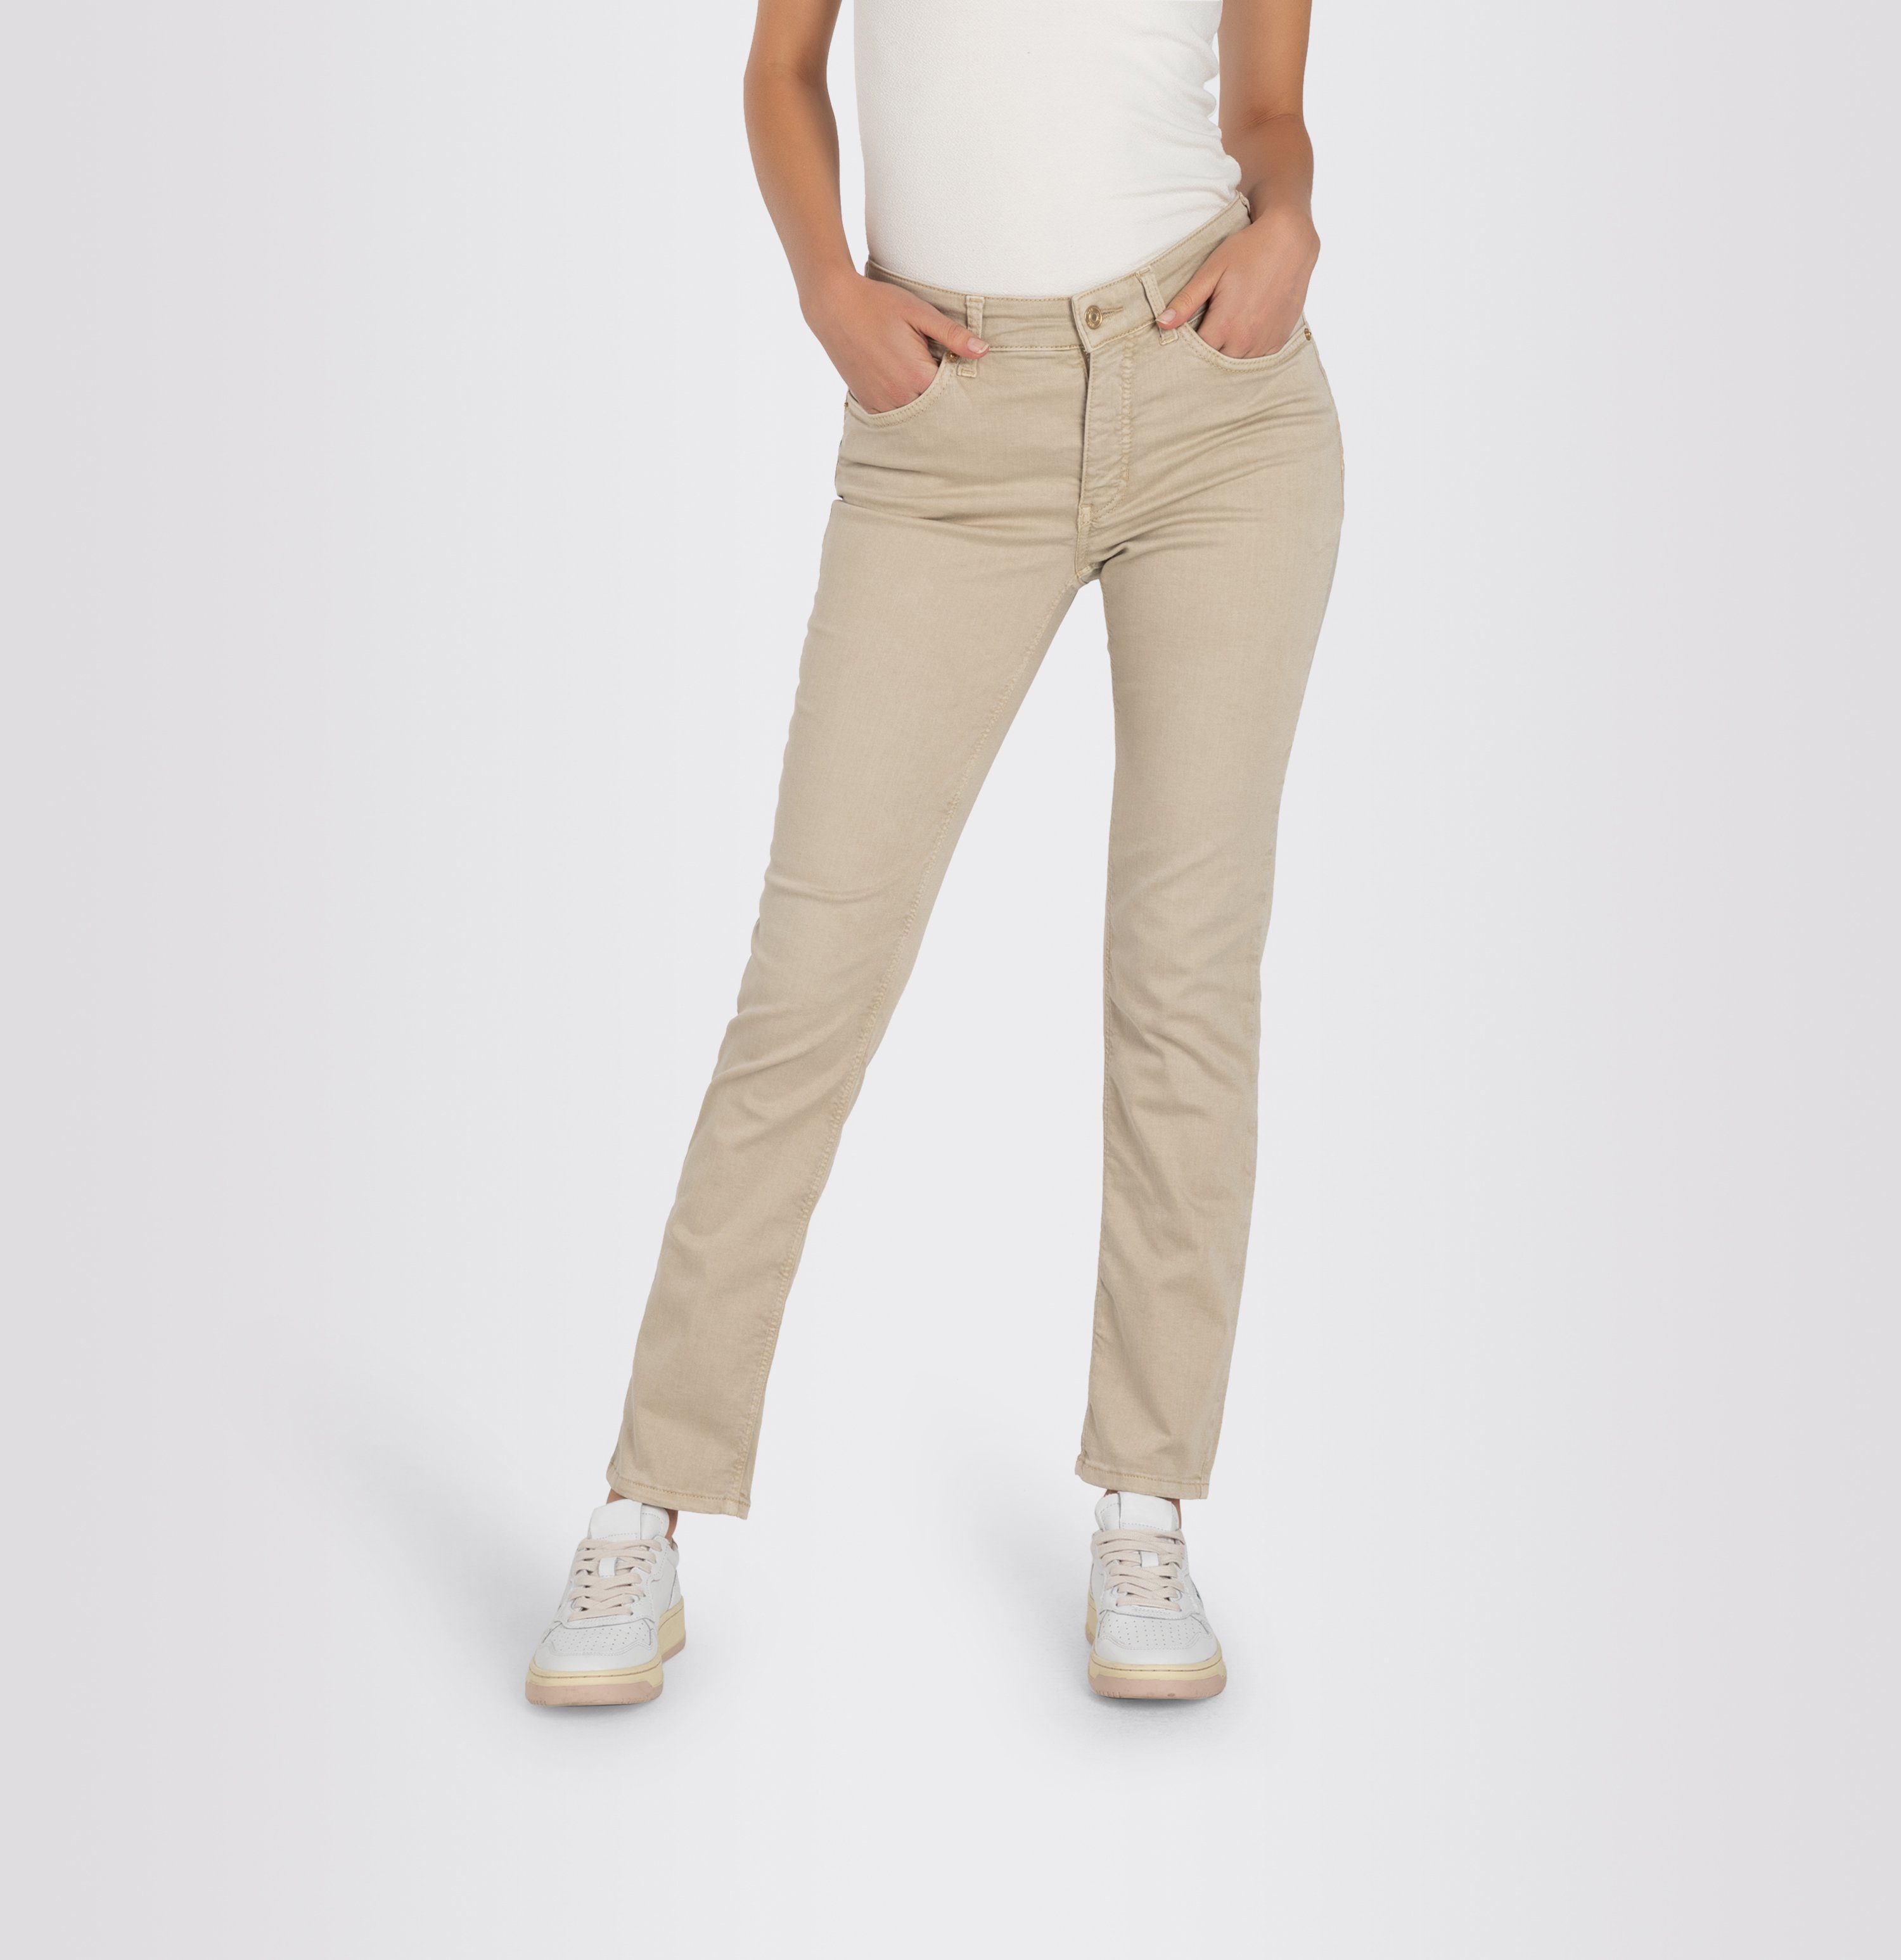 MAC Stretch jeans Melanie Recht model